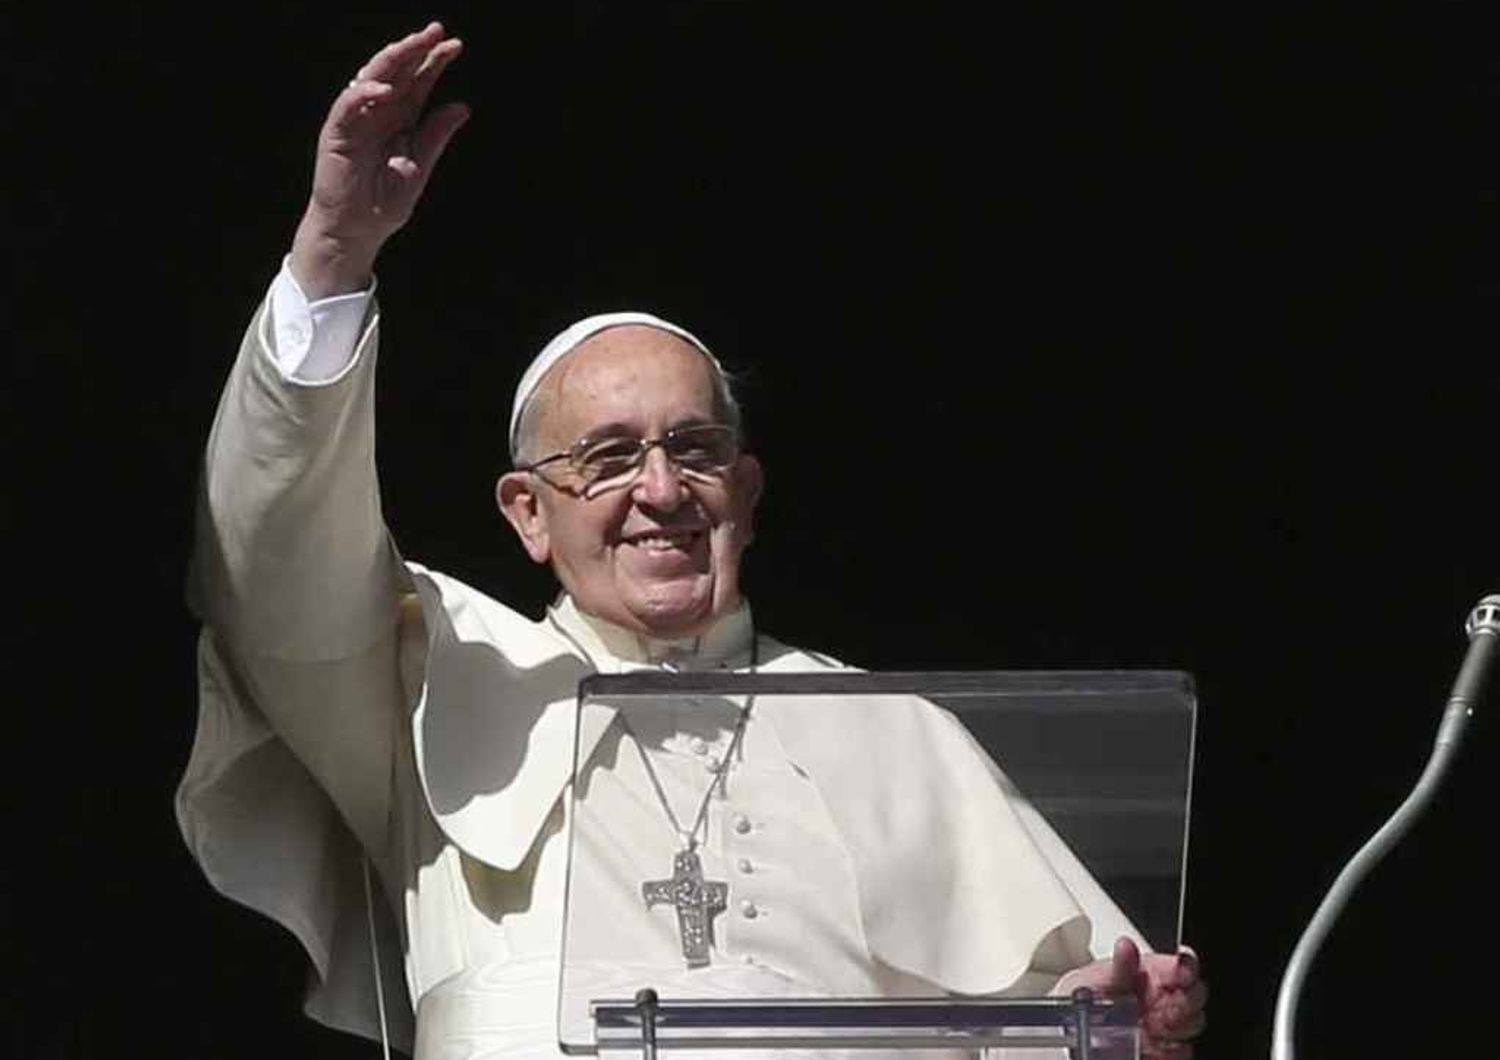 Il Papa ai fedeli: "lasciatevi consolare da Dio", "si' ai divorziati come padrini"